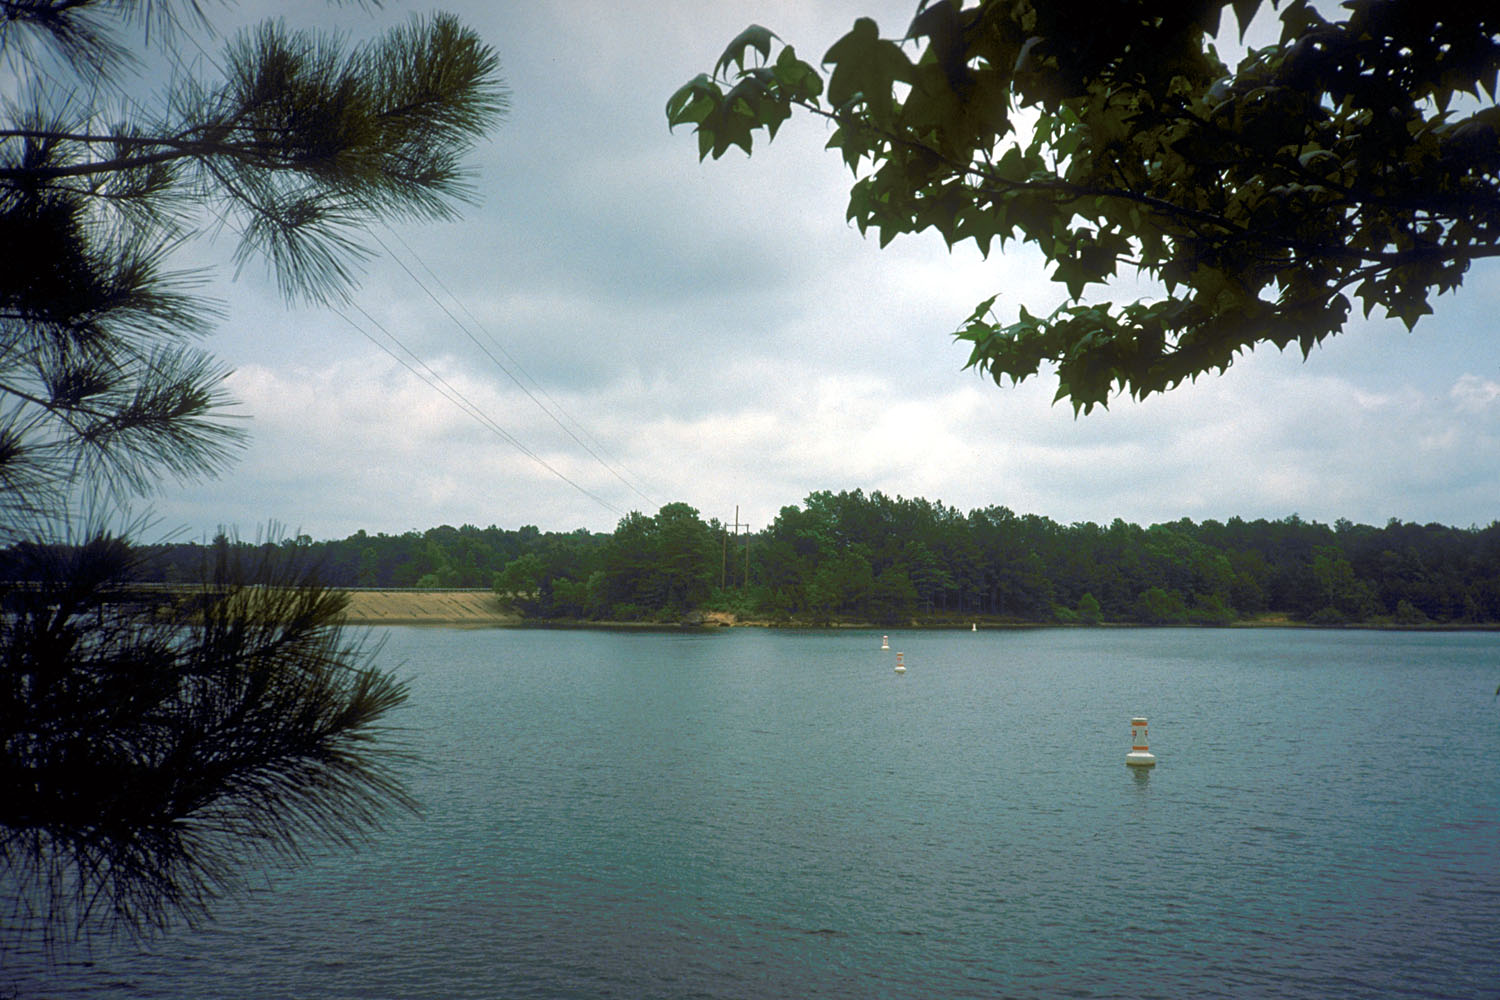 Lake O' the Pines - Wikipedia